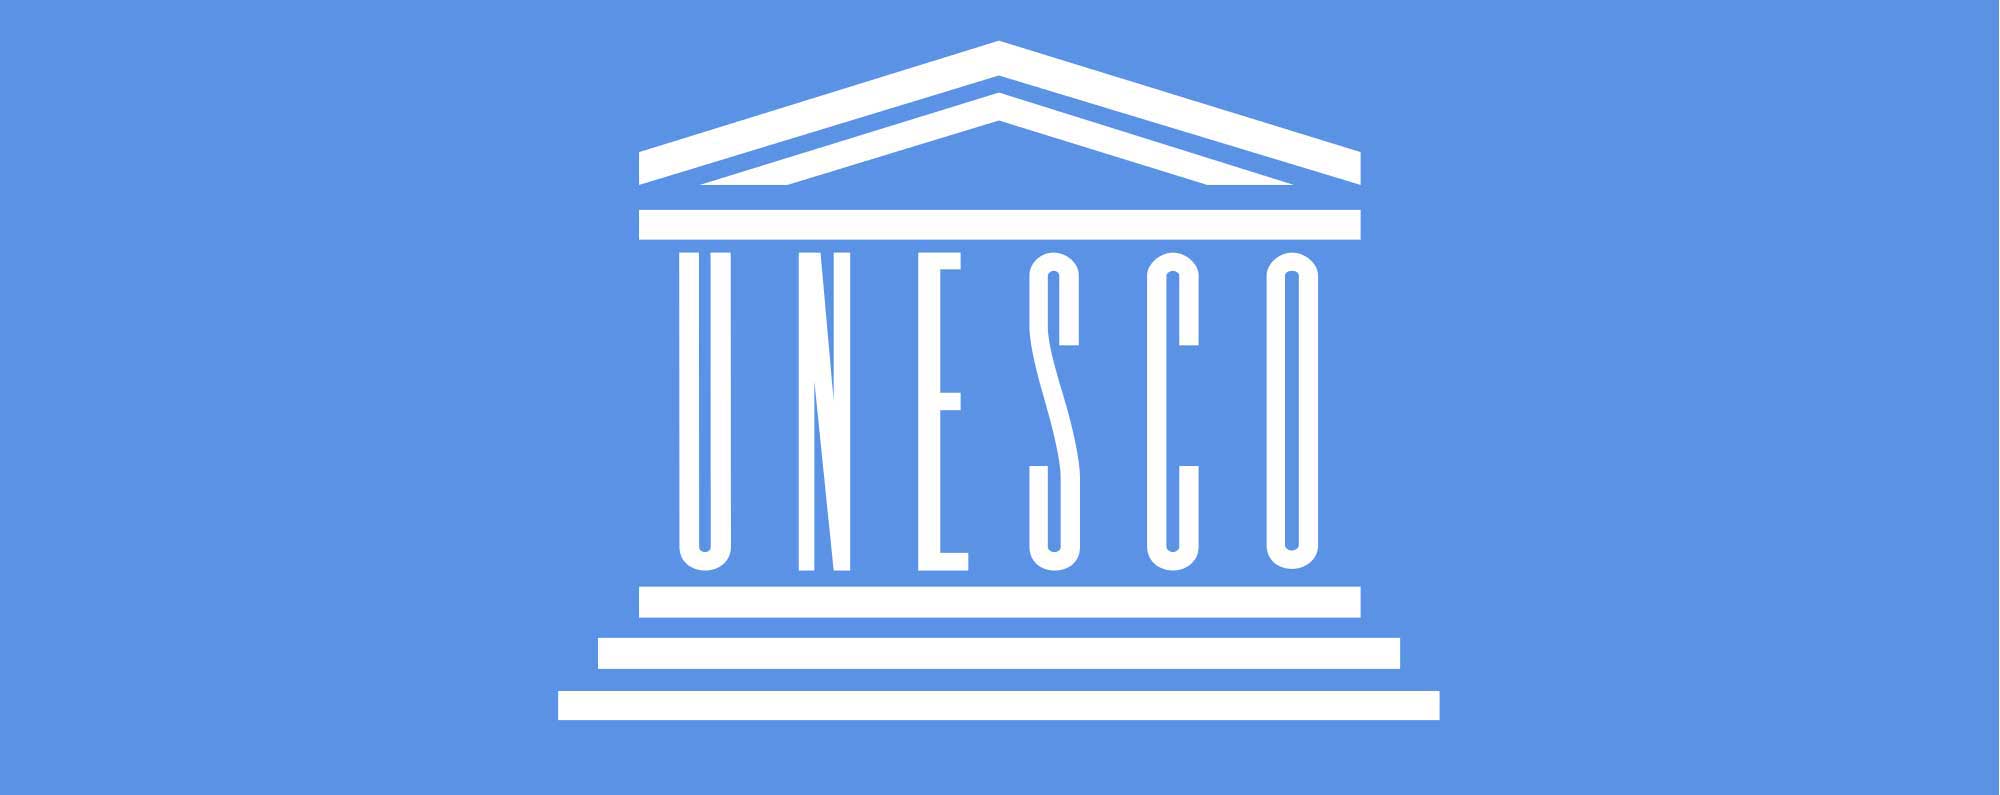 Unesco org. ООН ЮНЕСКО. ЮНЕСКО эмблема. Флаг ЮНЕСКО. Штаб квартира ЮНЕСКО.